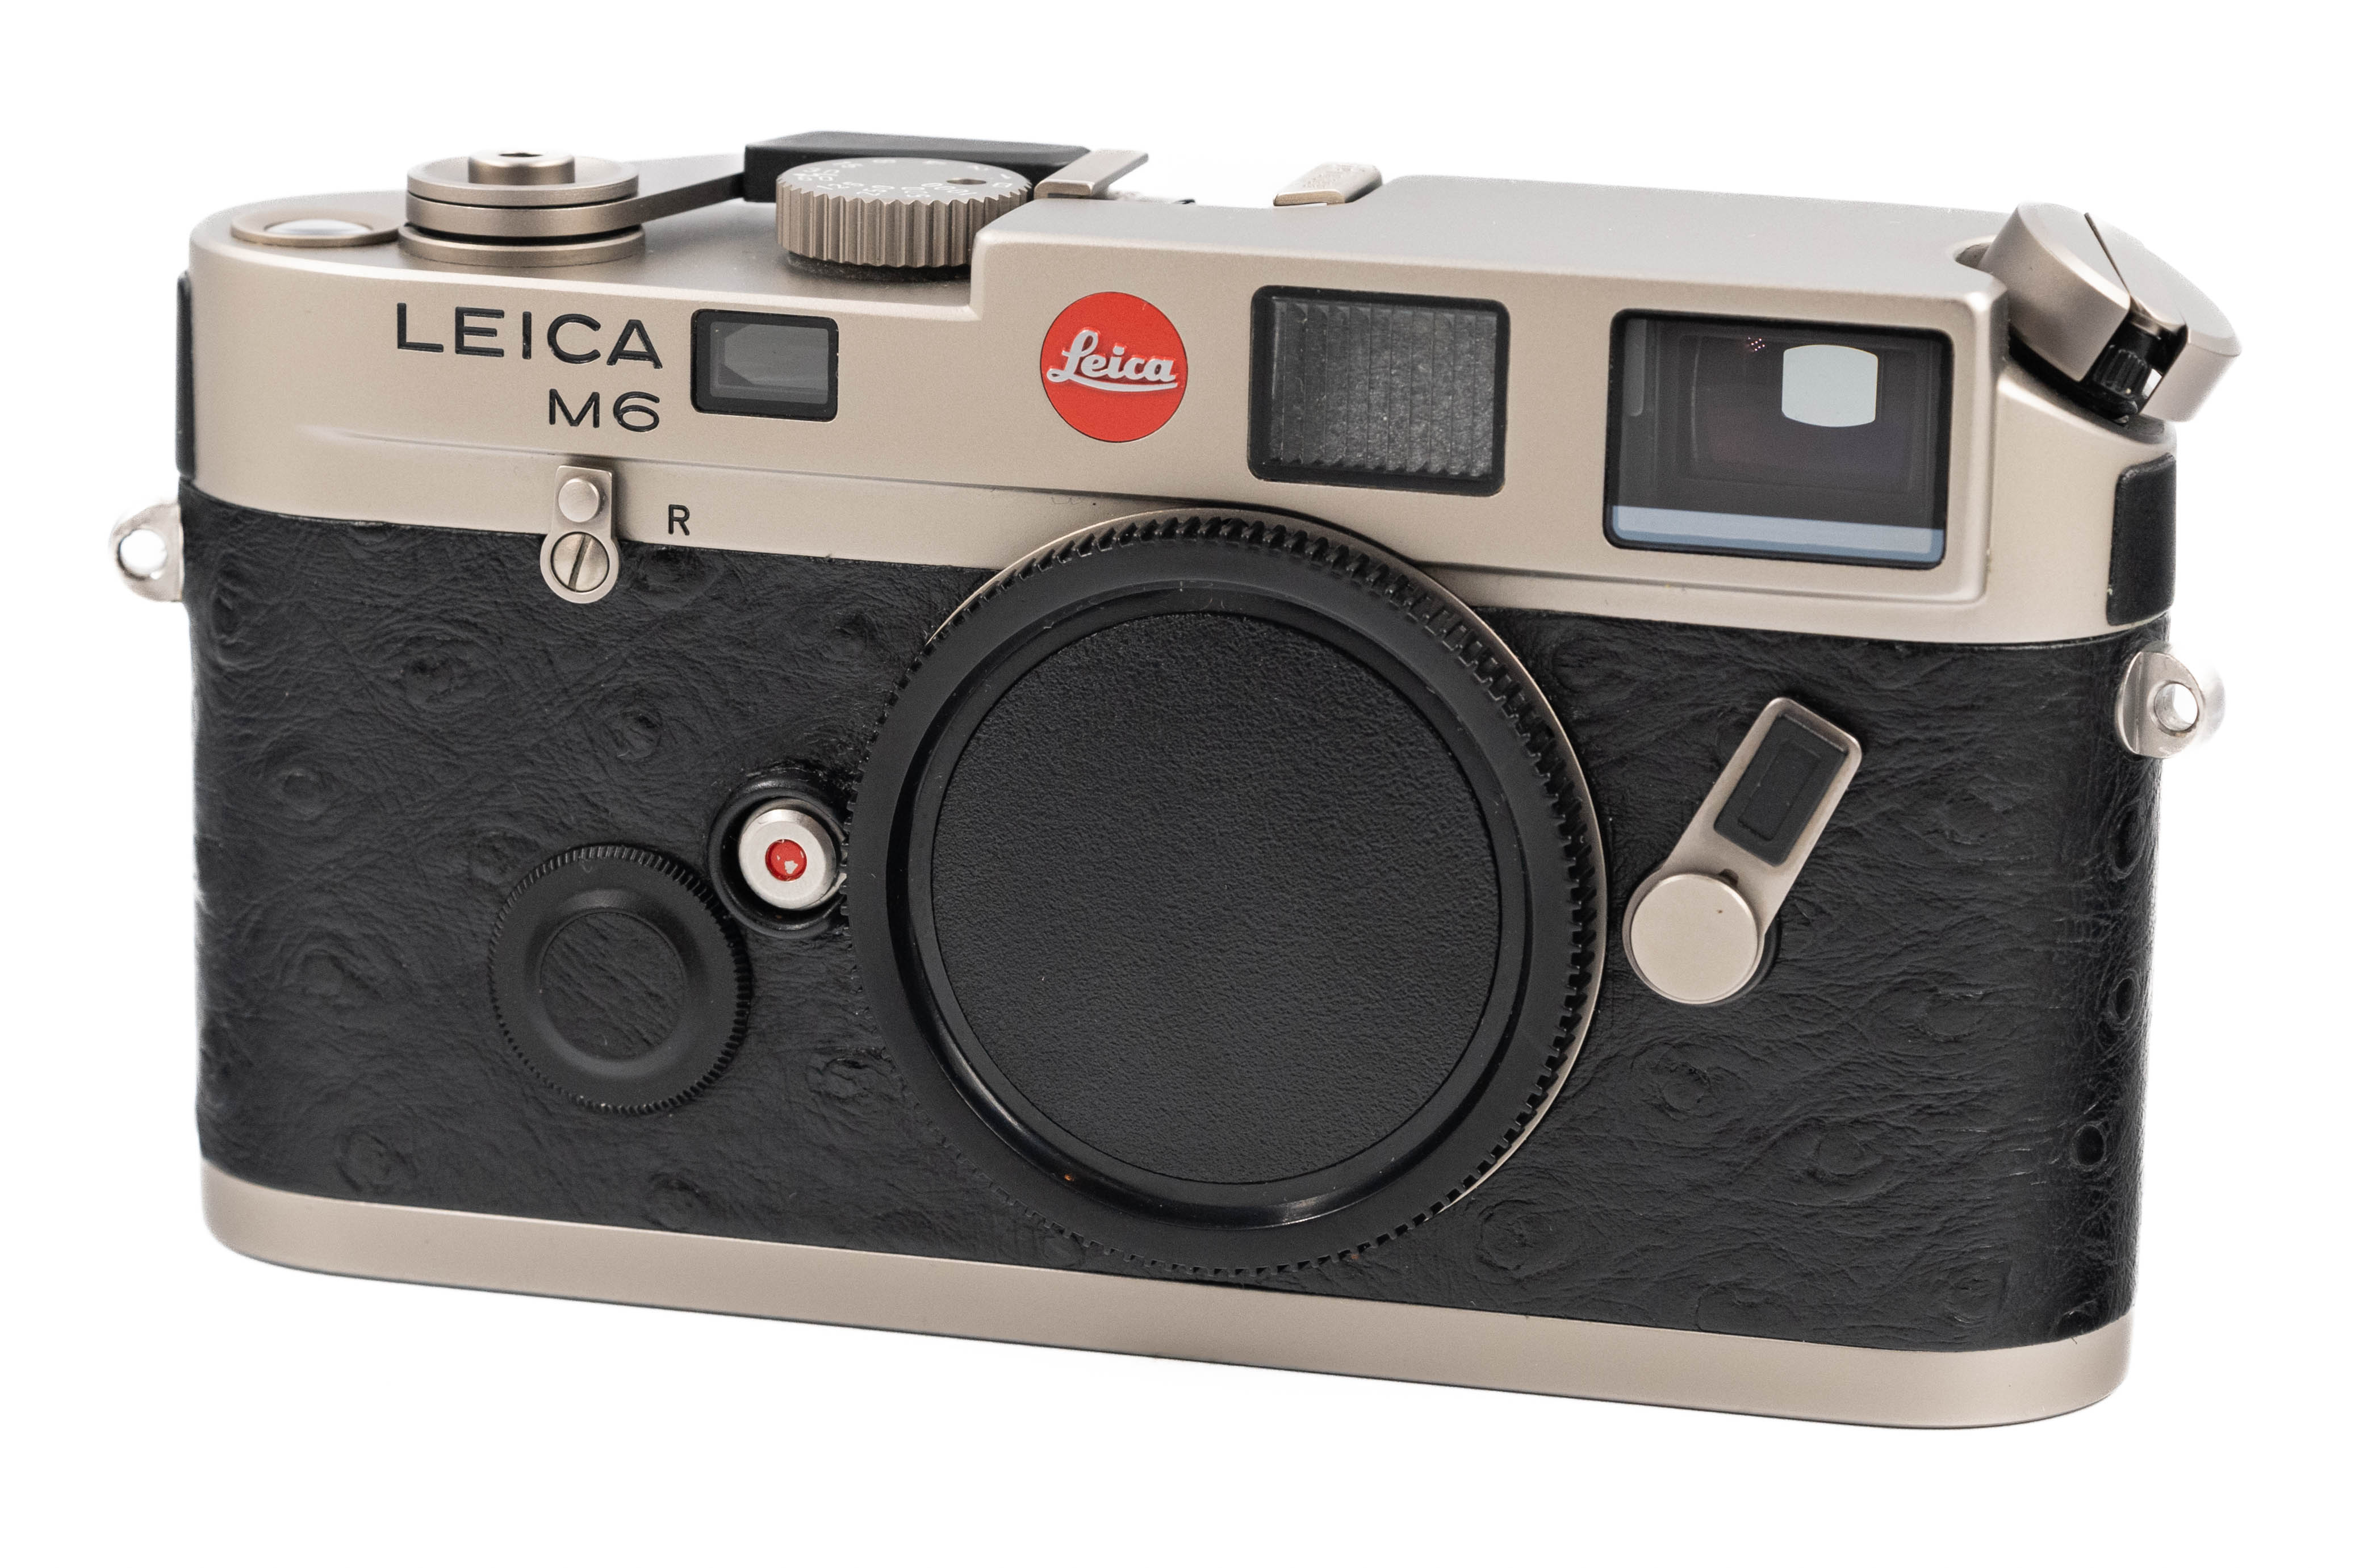 Leica M6 Classic 0.72x Titanium 10412